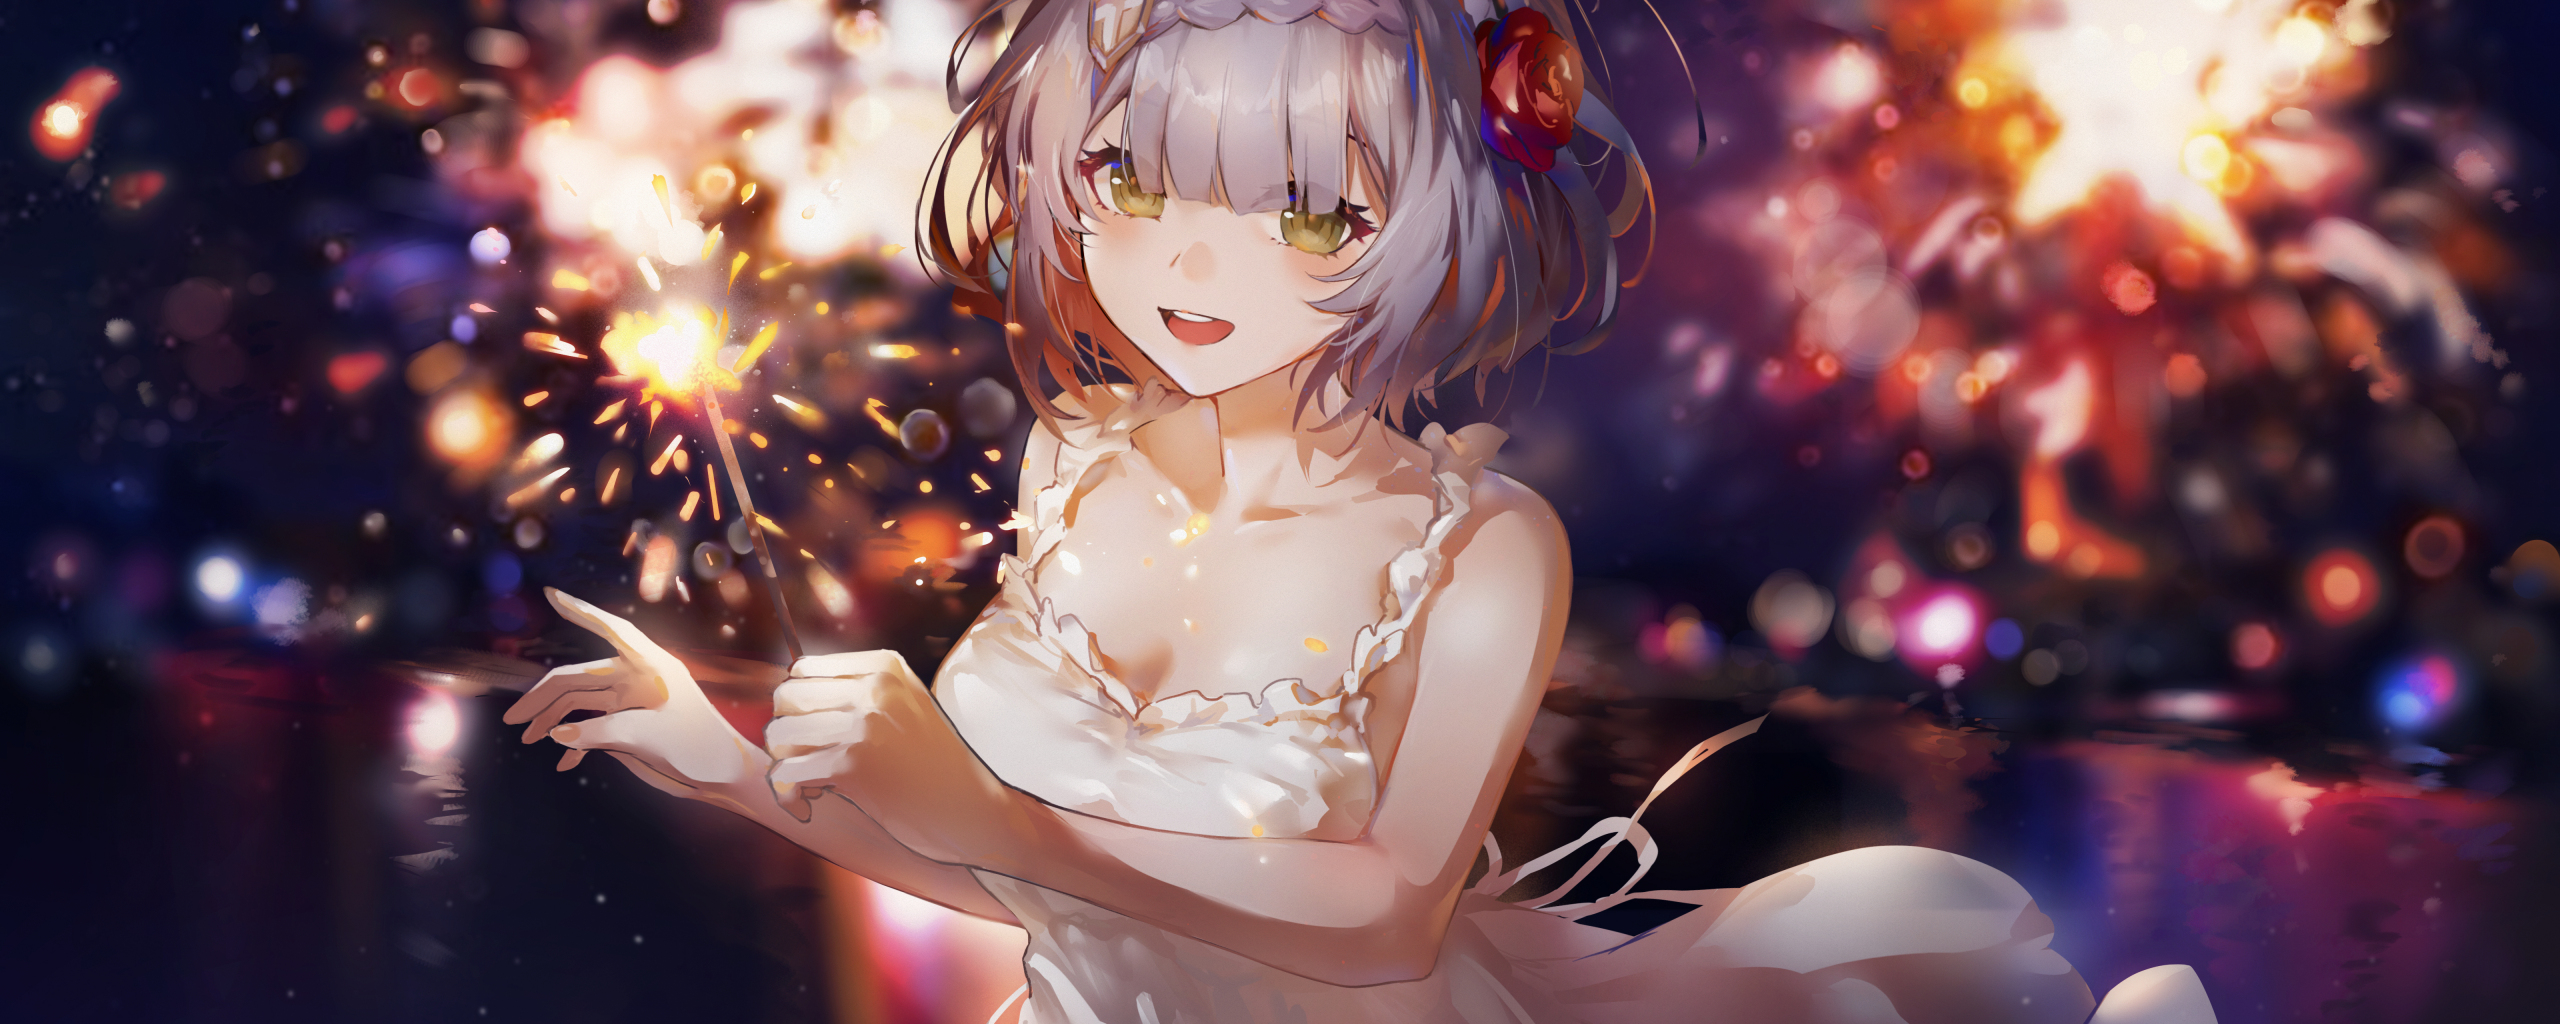 White dress, cute anime girl, art, 2560x1024 wallpaper